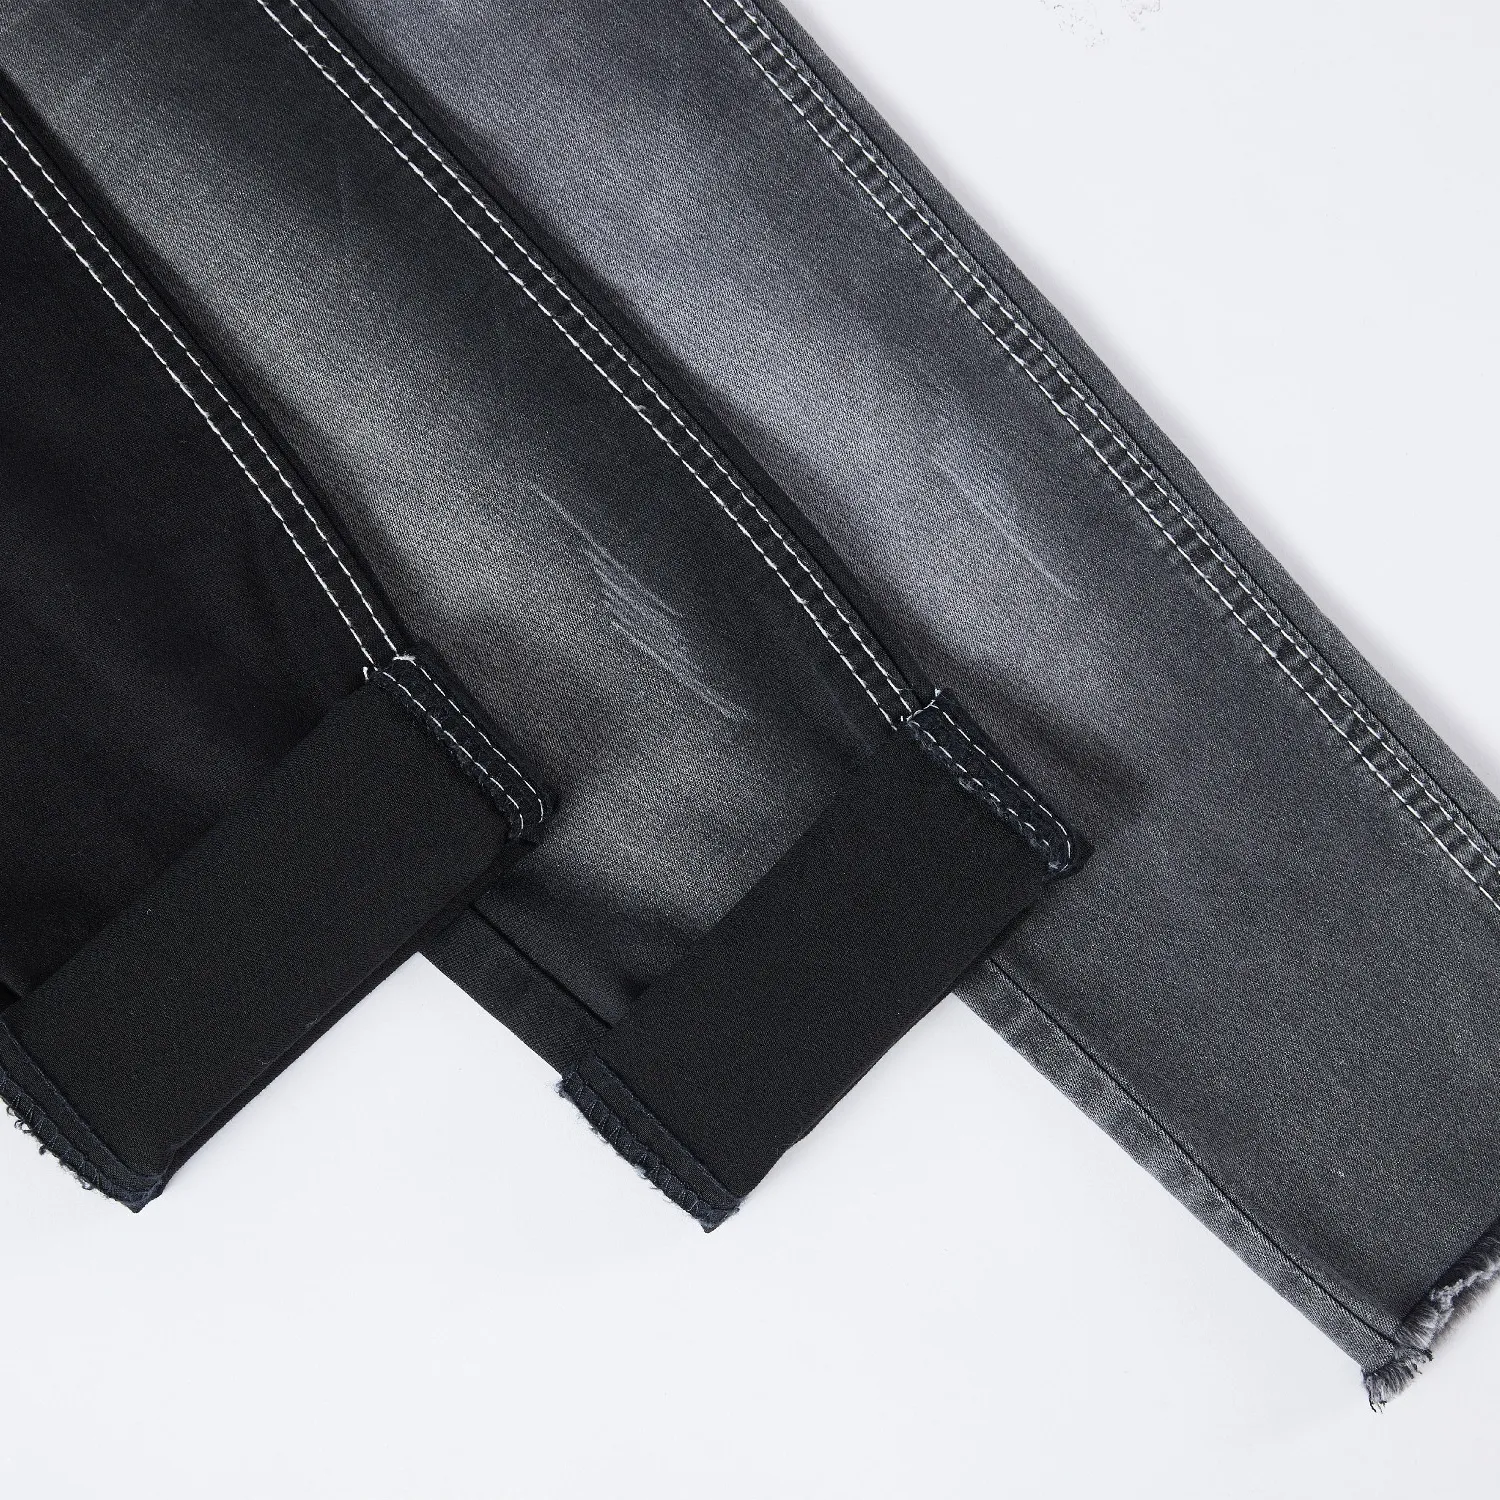 Tessuto ecologico dei Jeans del Denim GA001-1 l'elastan di colore nero del cotone per i Jeans delle donne